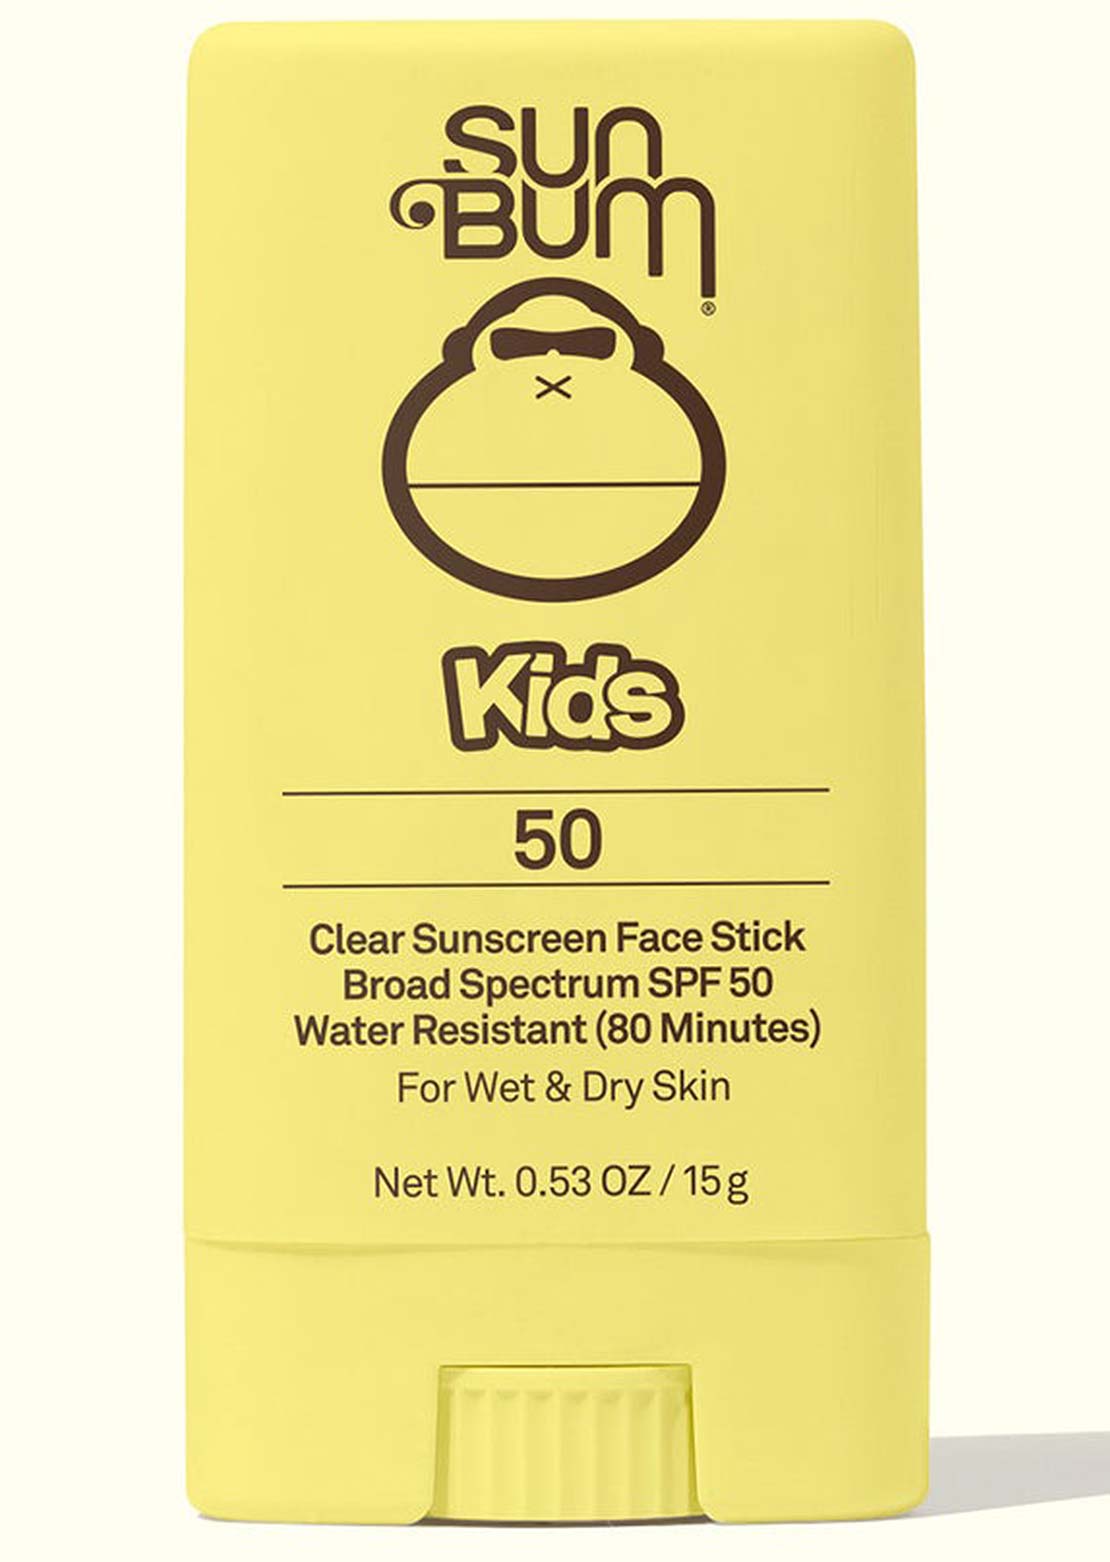 Sun Bum Baby Bum SPF 50 Sunscreen Face Stick